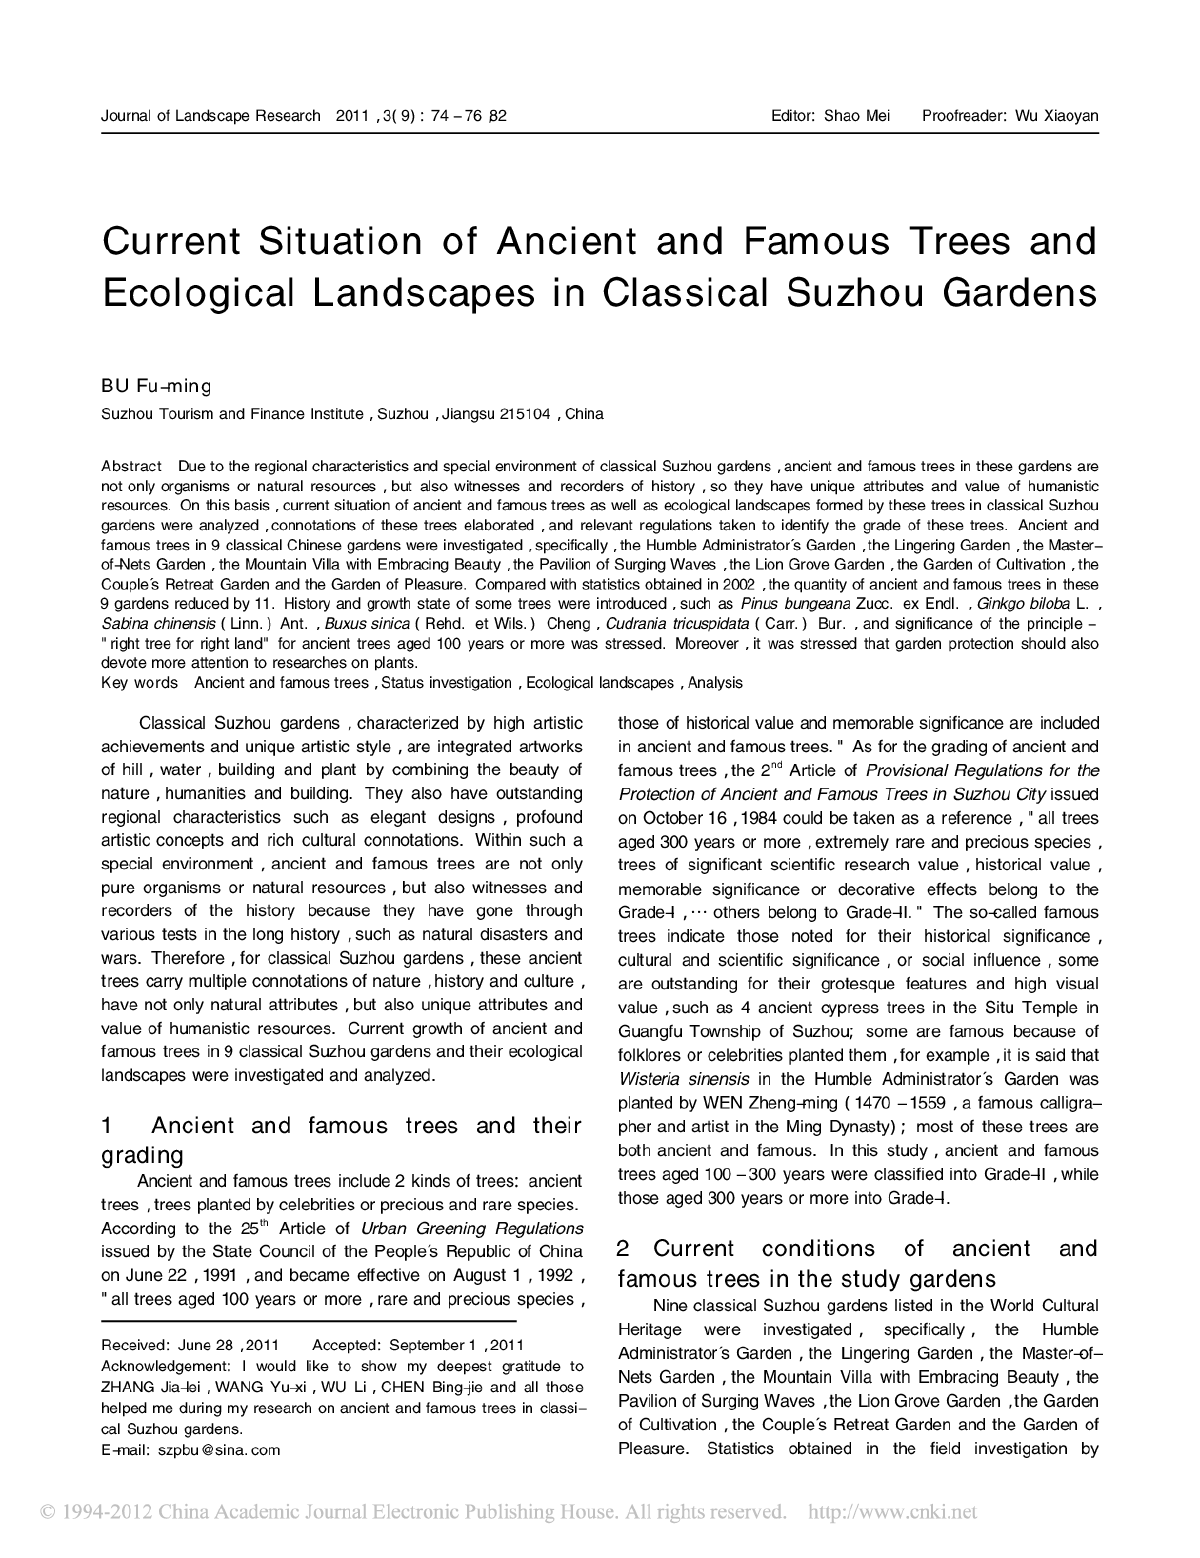 苏州古典园林古树名木的现状及生态景观分析(英文)-图一